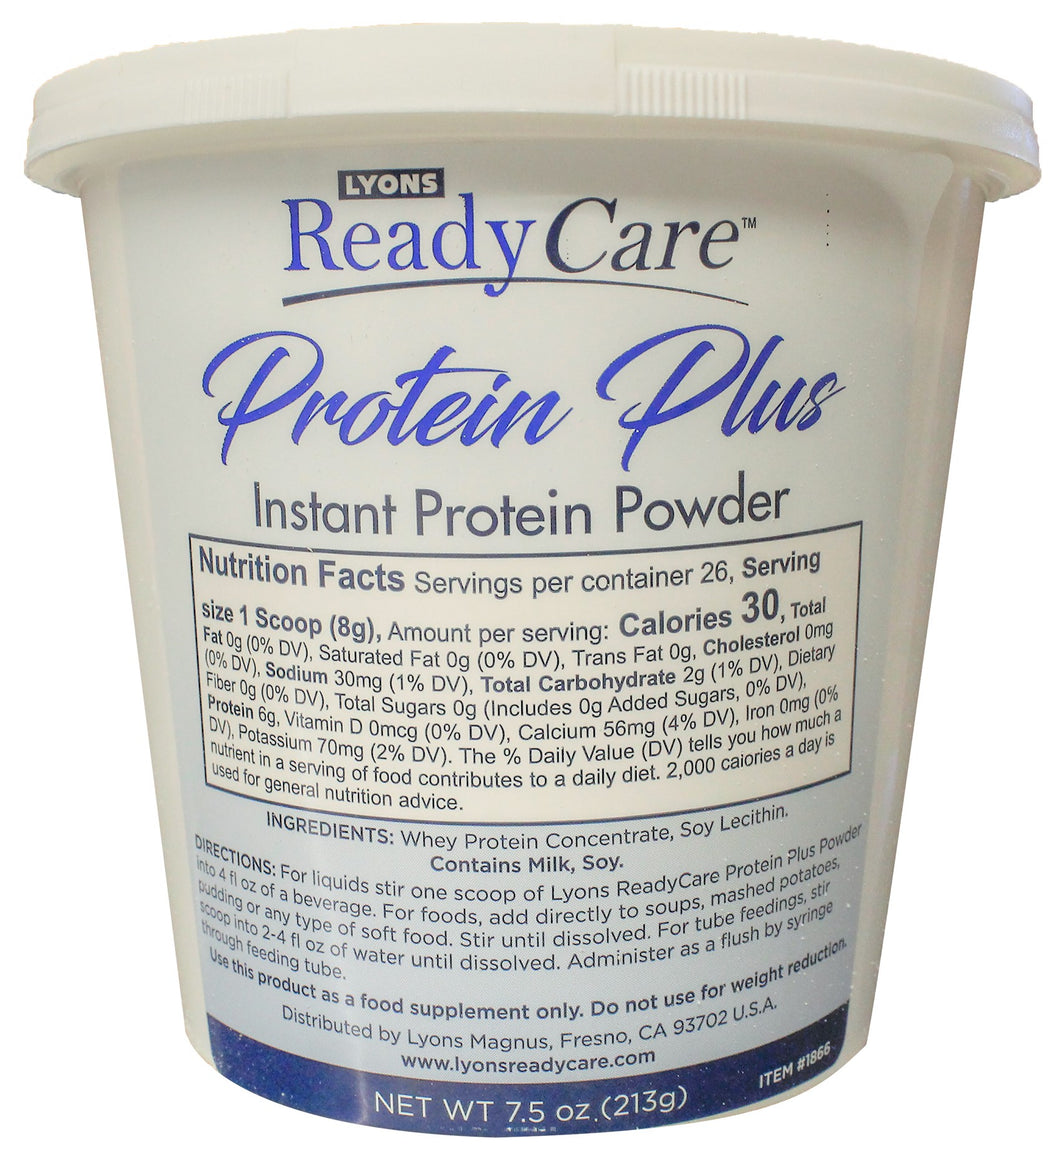 Protein Plus